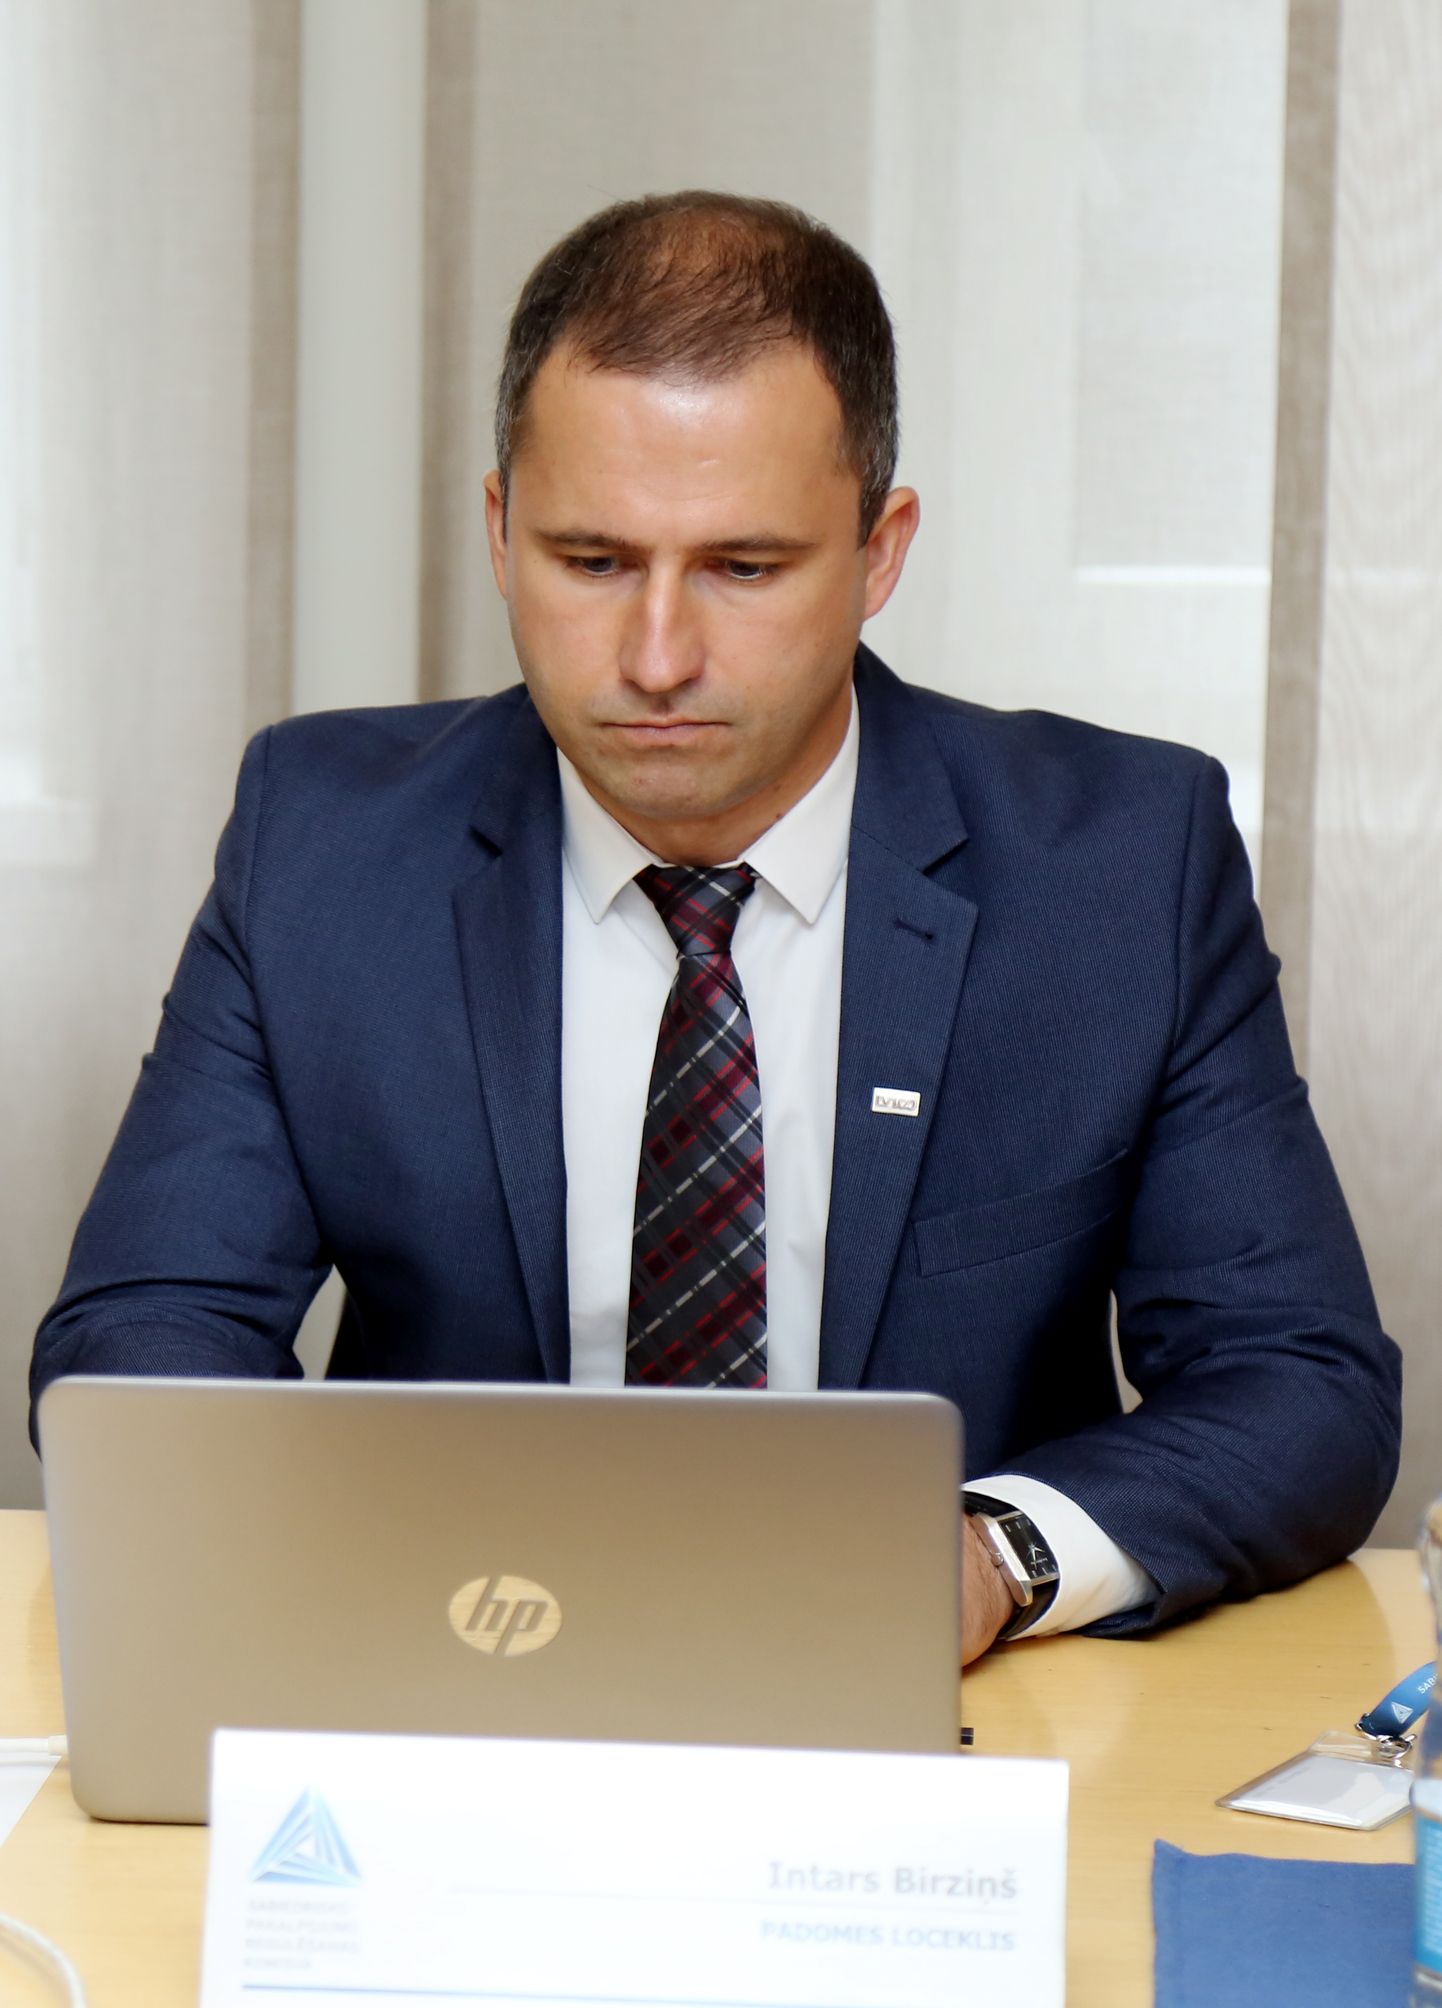 Sabiedrisko pakalpojumu regulēšanas komisijas (SPRK) padomes loceklis Intars Birziņš